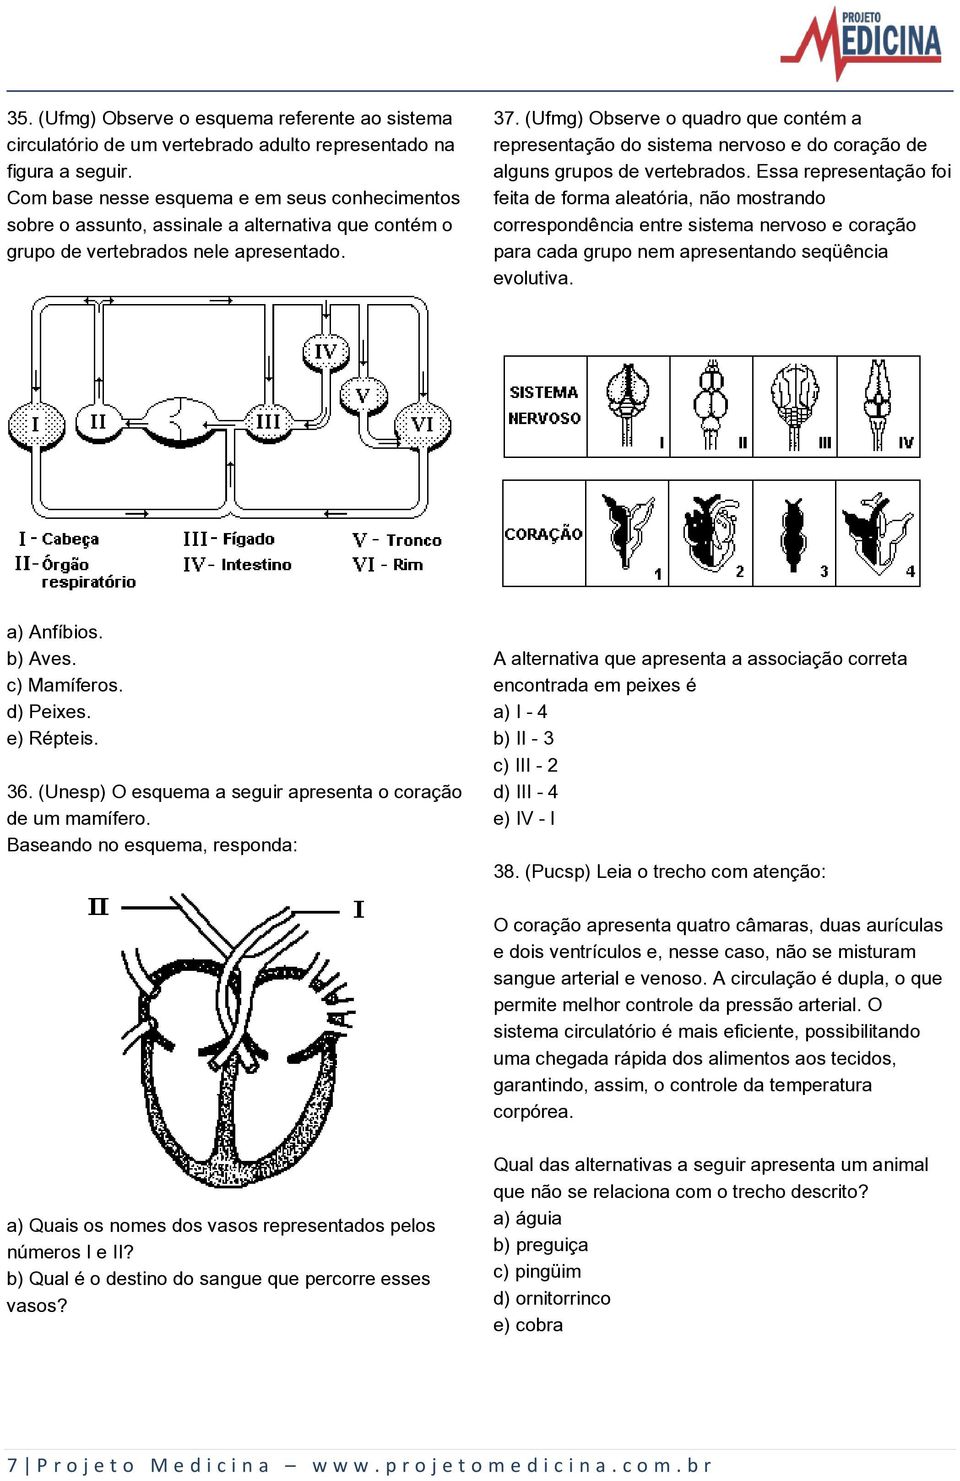 (Ufmg) Observe o quadro que contém a representação do sistema nervoso e do coração de alguns grupos de vertebrados.